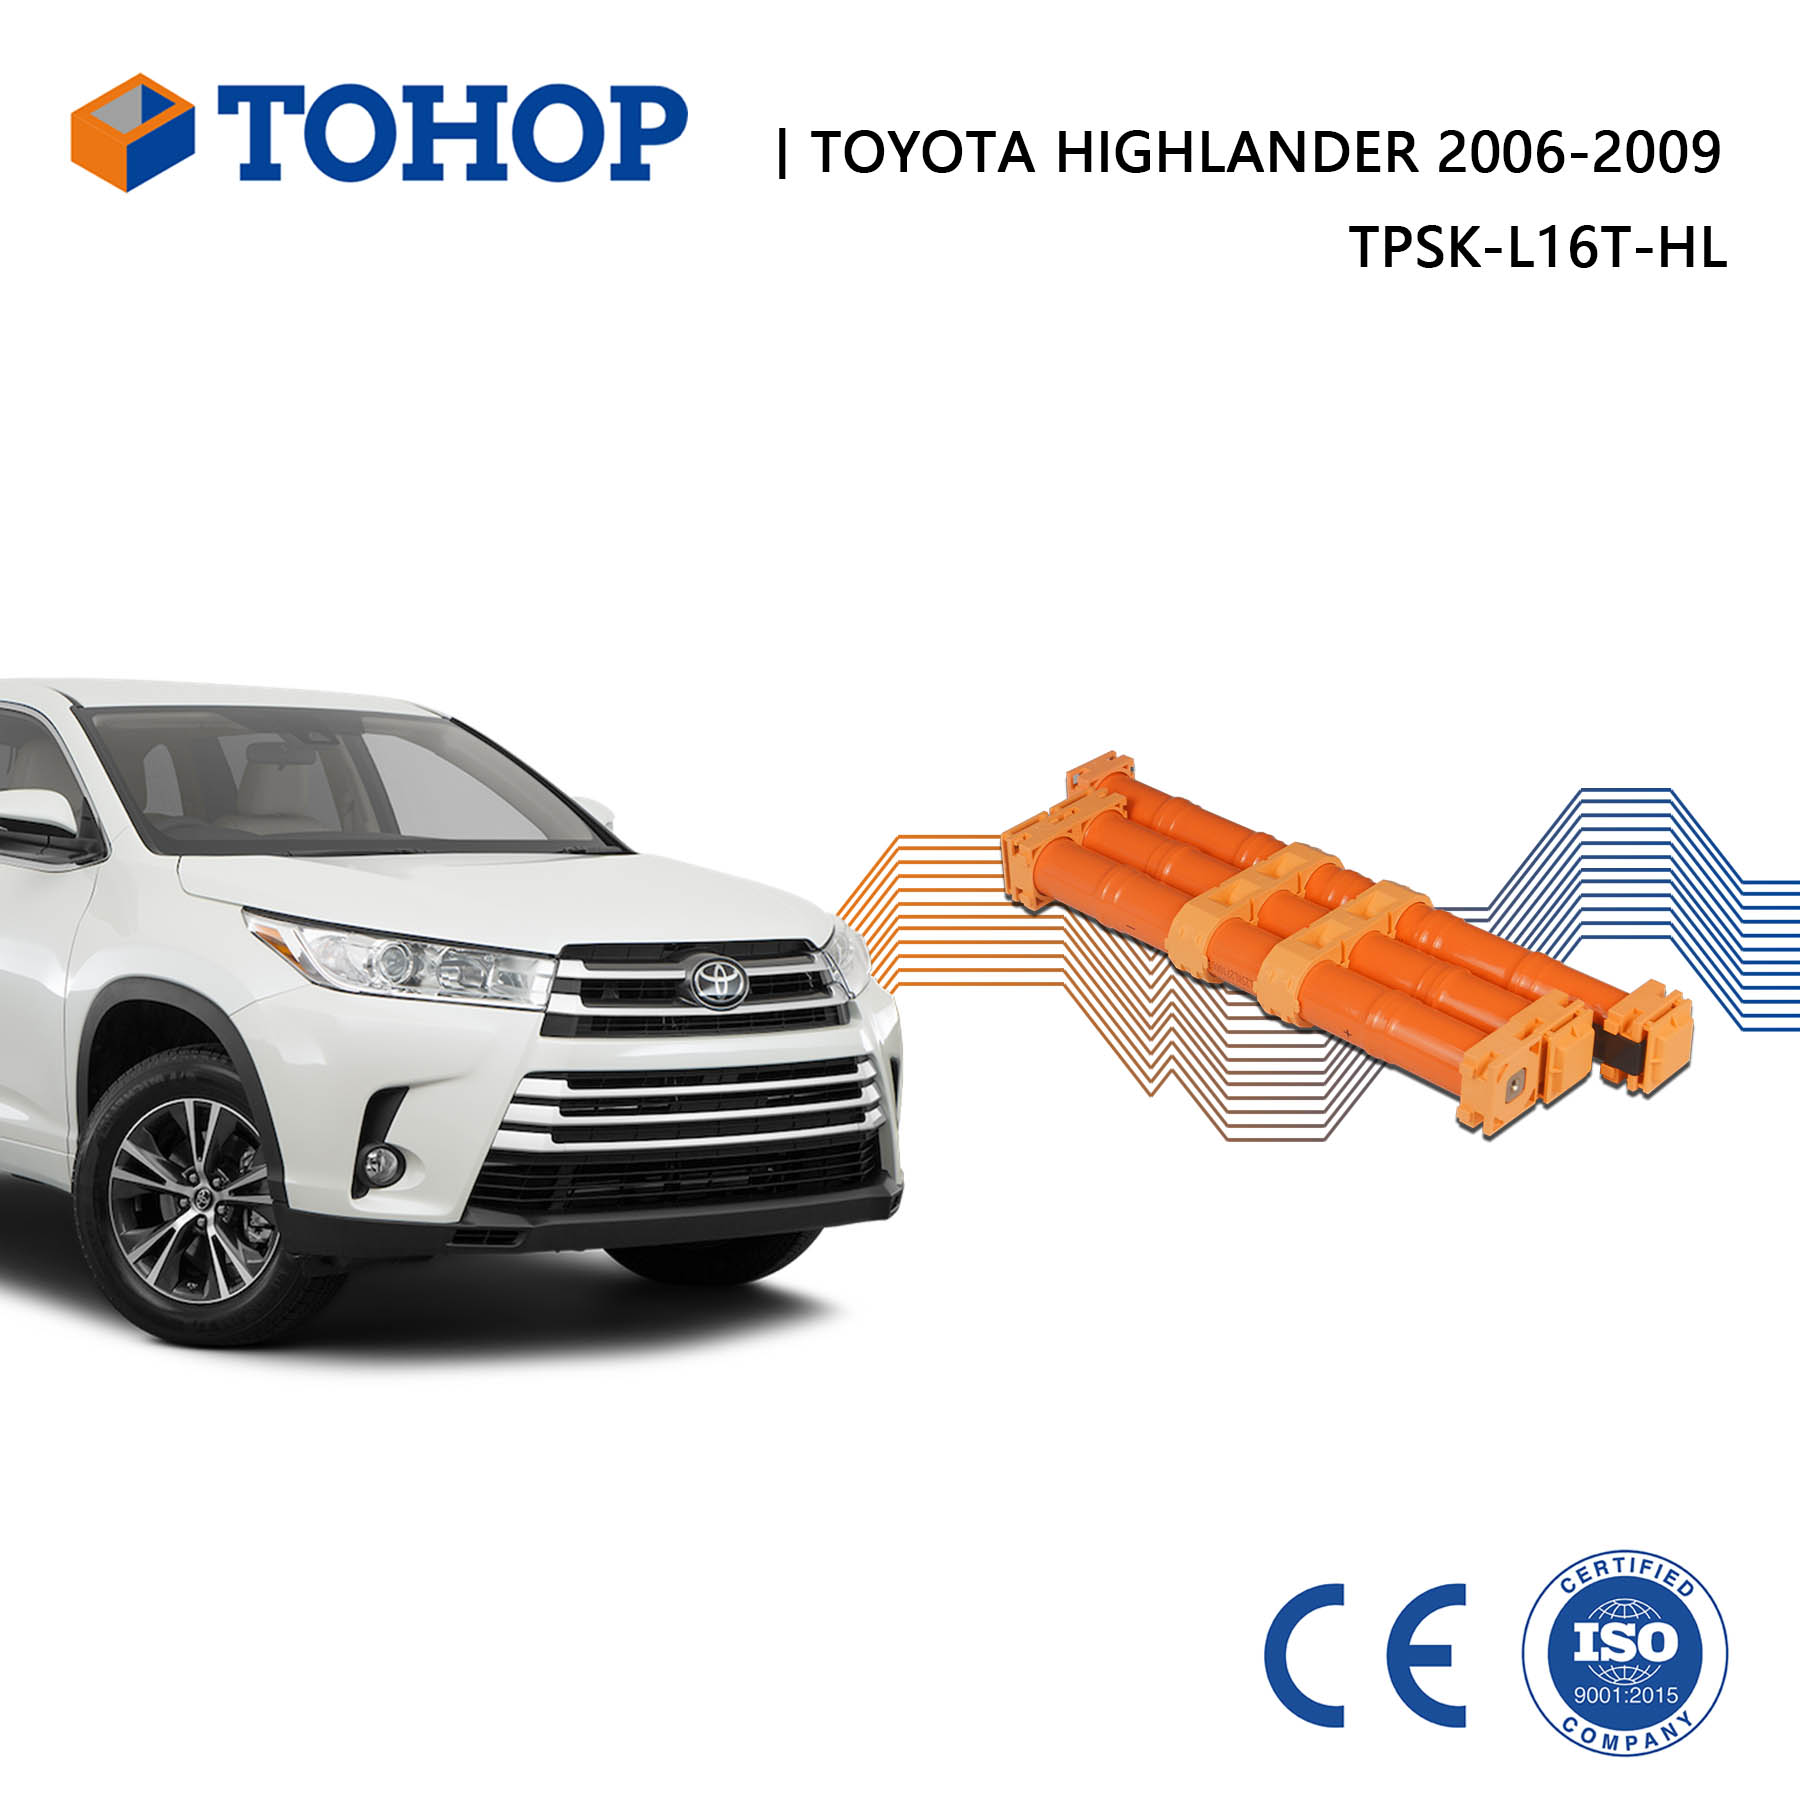 Batería híbrida de Toyota Highlander